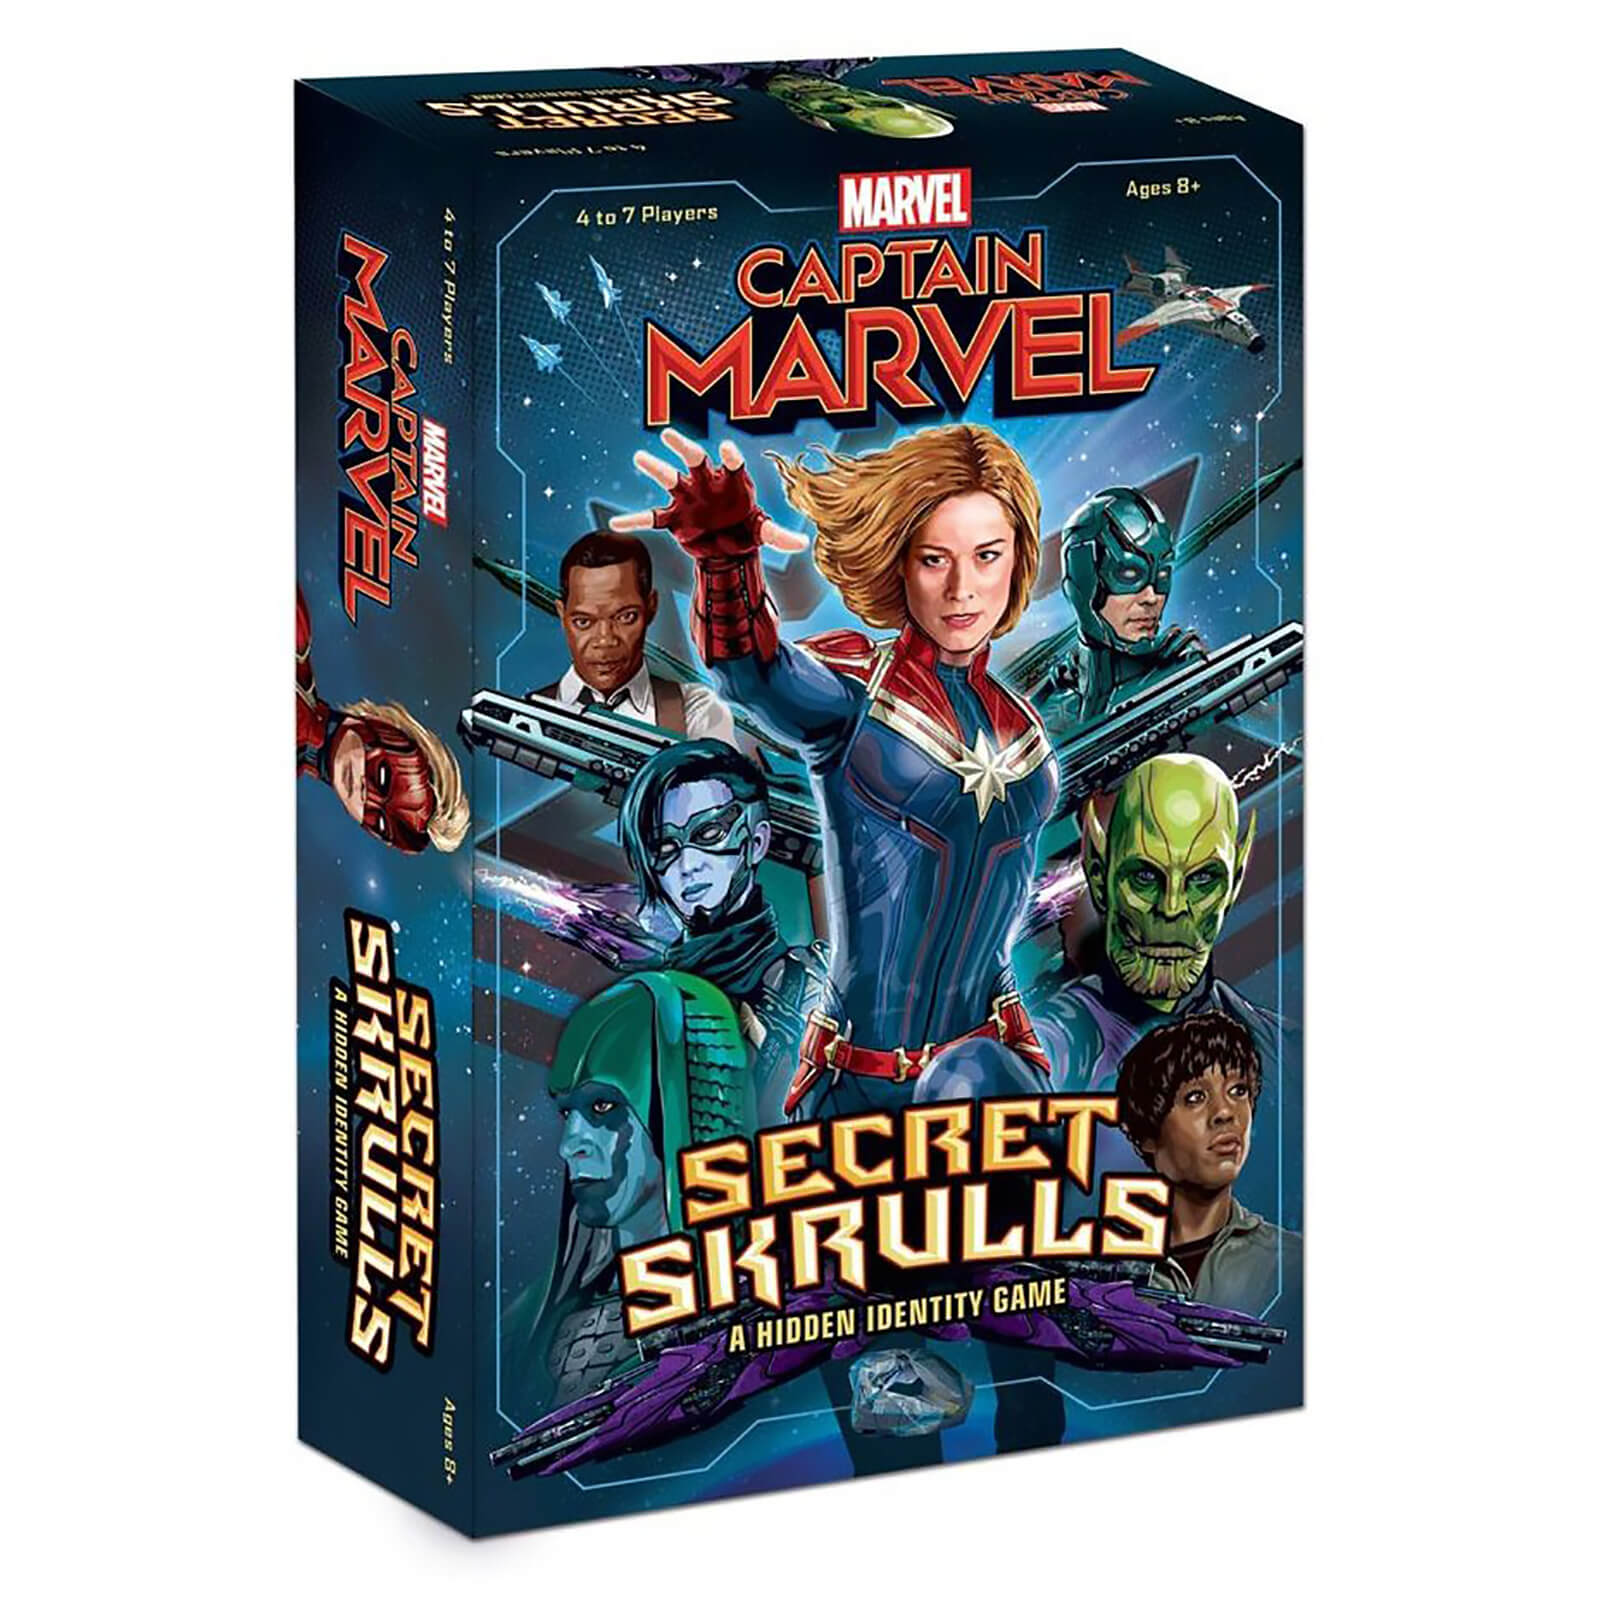 სამაგიდო თამაში კაპიტანი მარველი საიდუმლო სქრულები (Captain Marvel Secret Skrulls) 